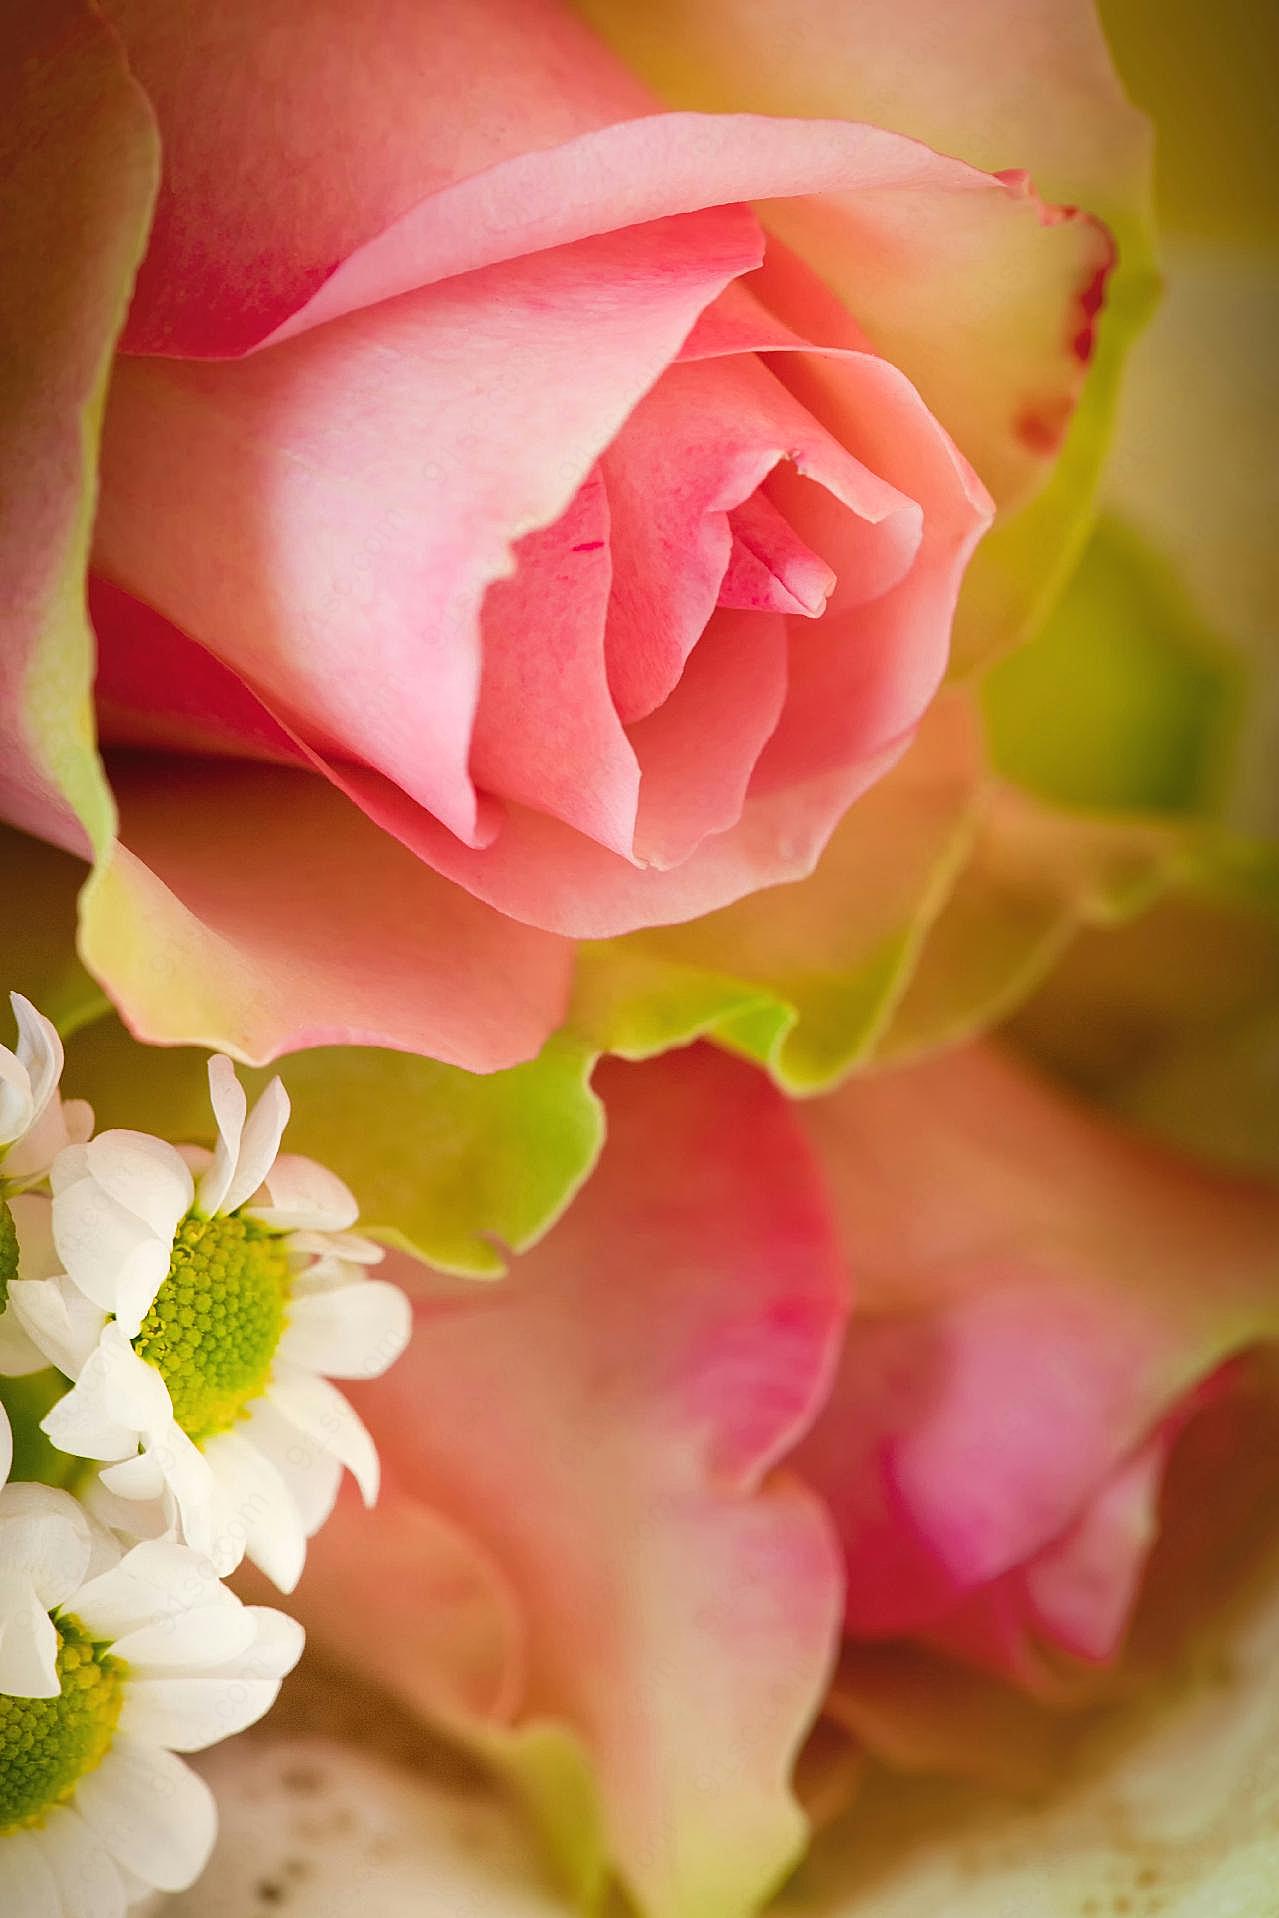 高清粉红玫瑰图片下载玫瑰花